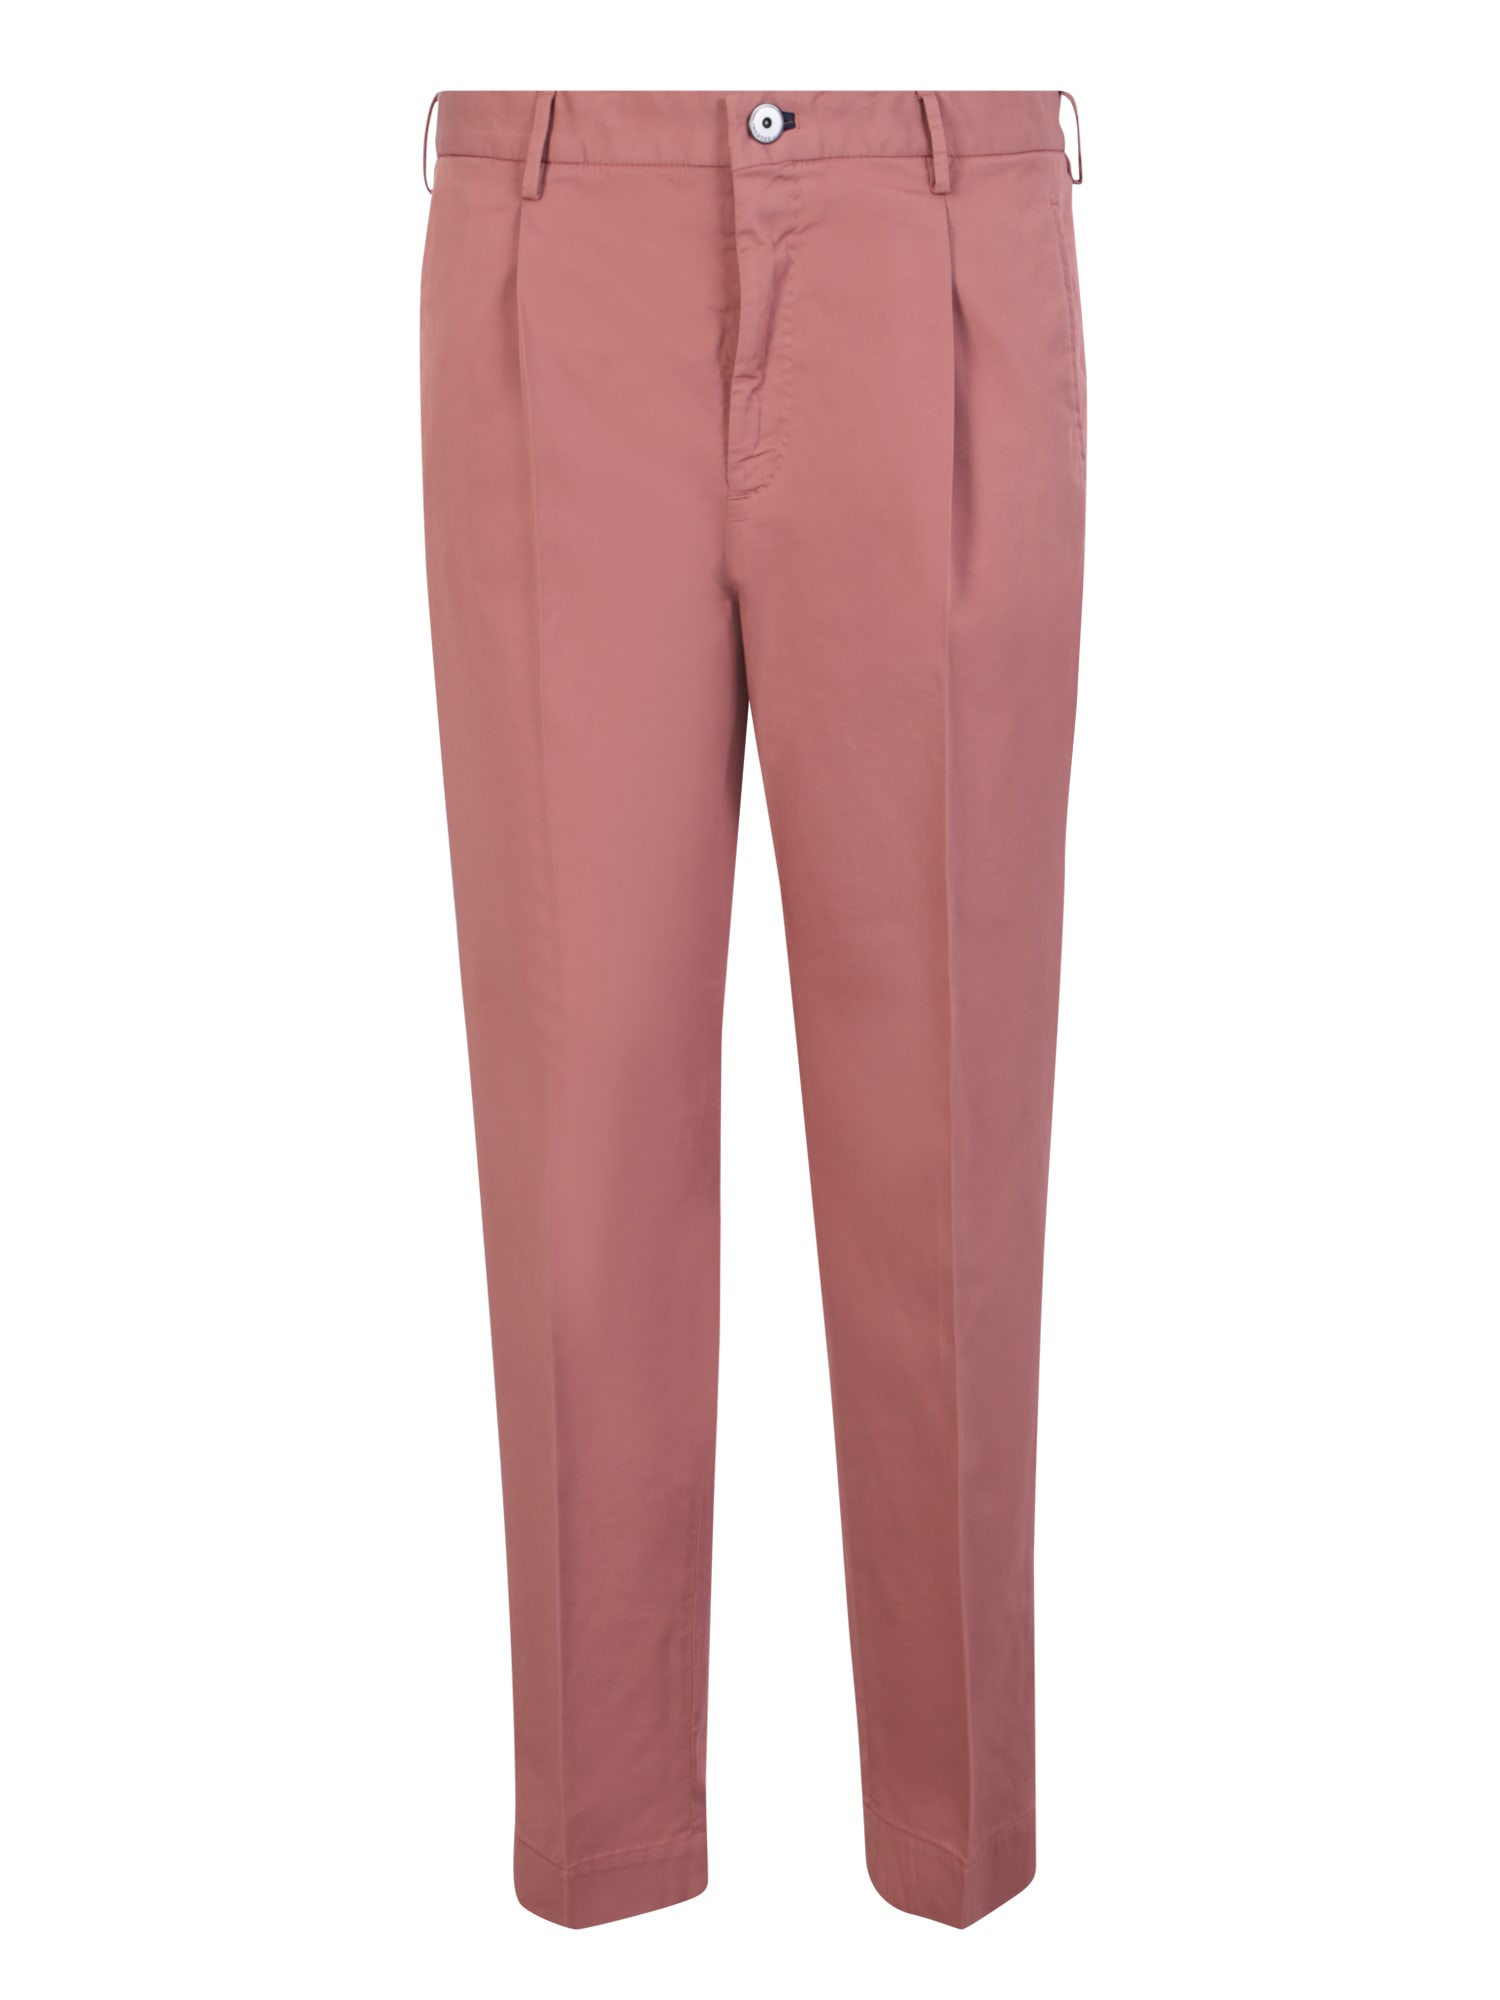 Shop Incotex Antique Pink Trousers